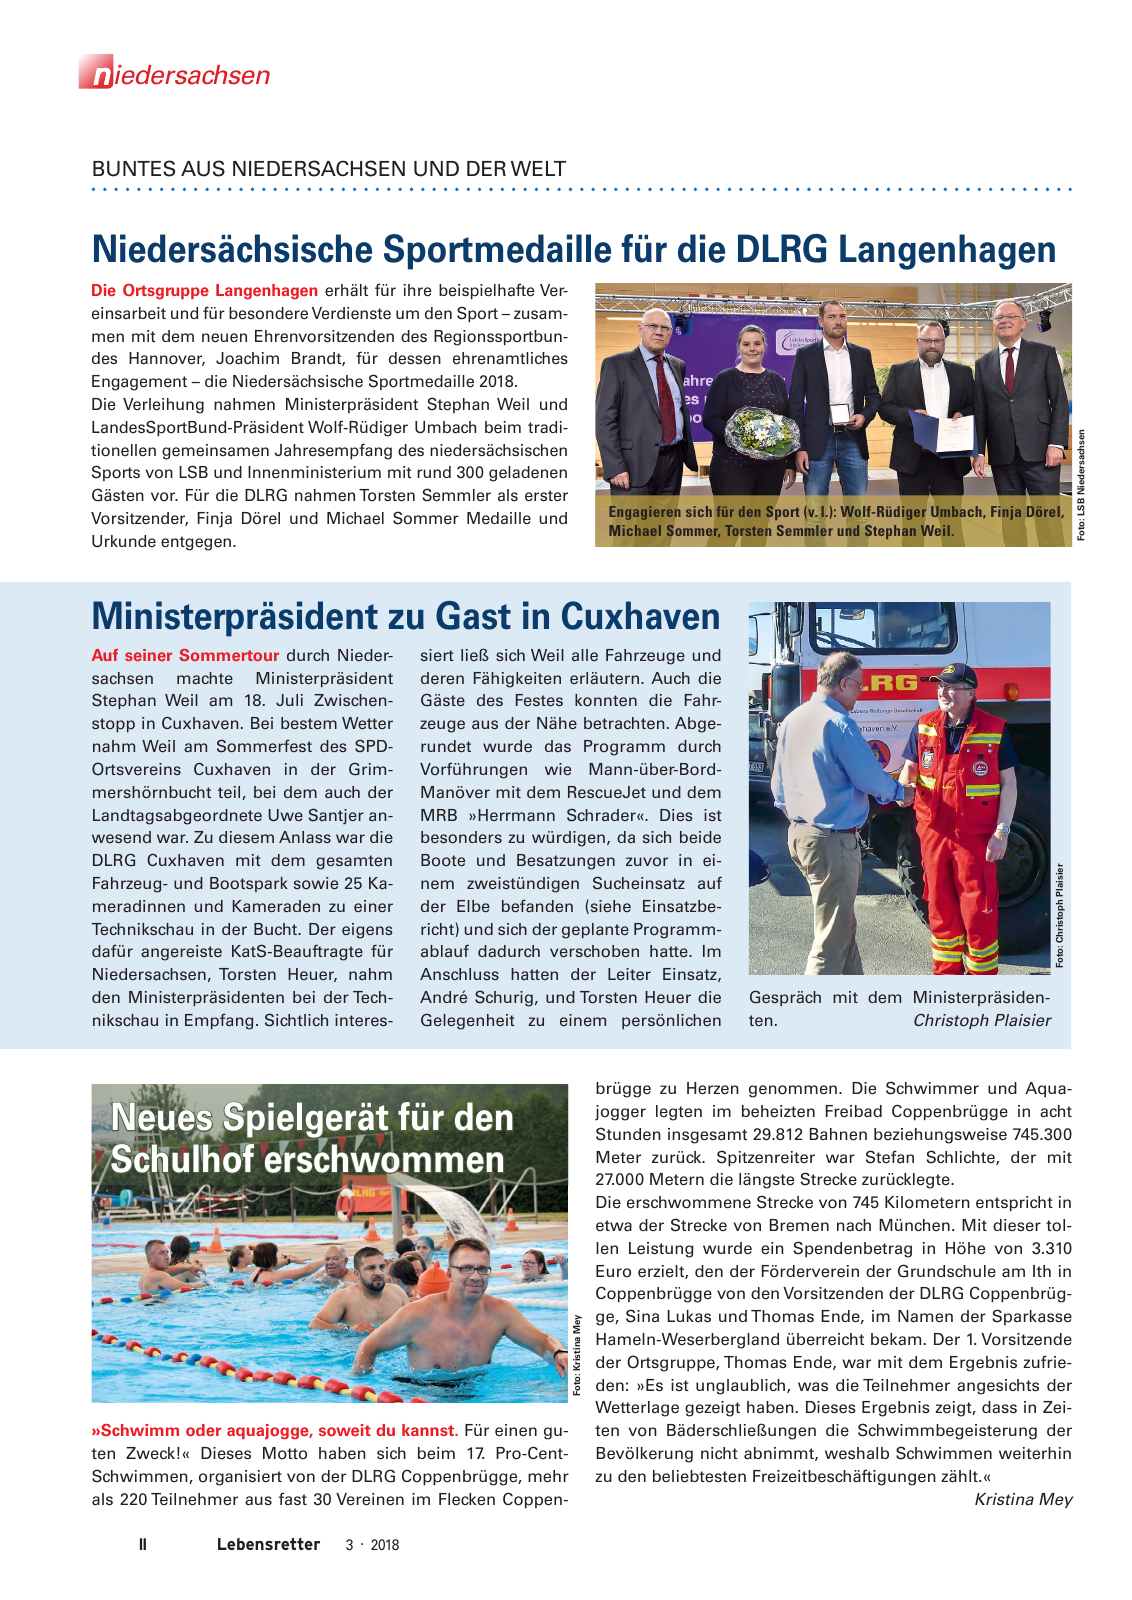 Vorschau Lebensretter 3/2018 - Regionalausgabe Niedersachsen Seite 4